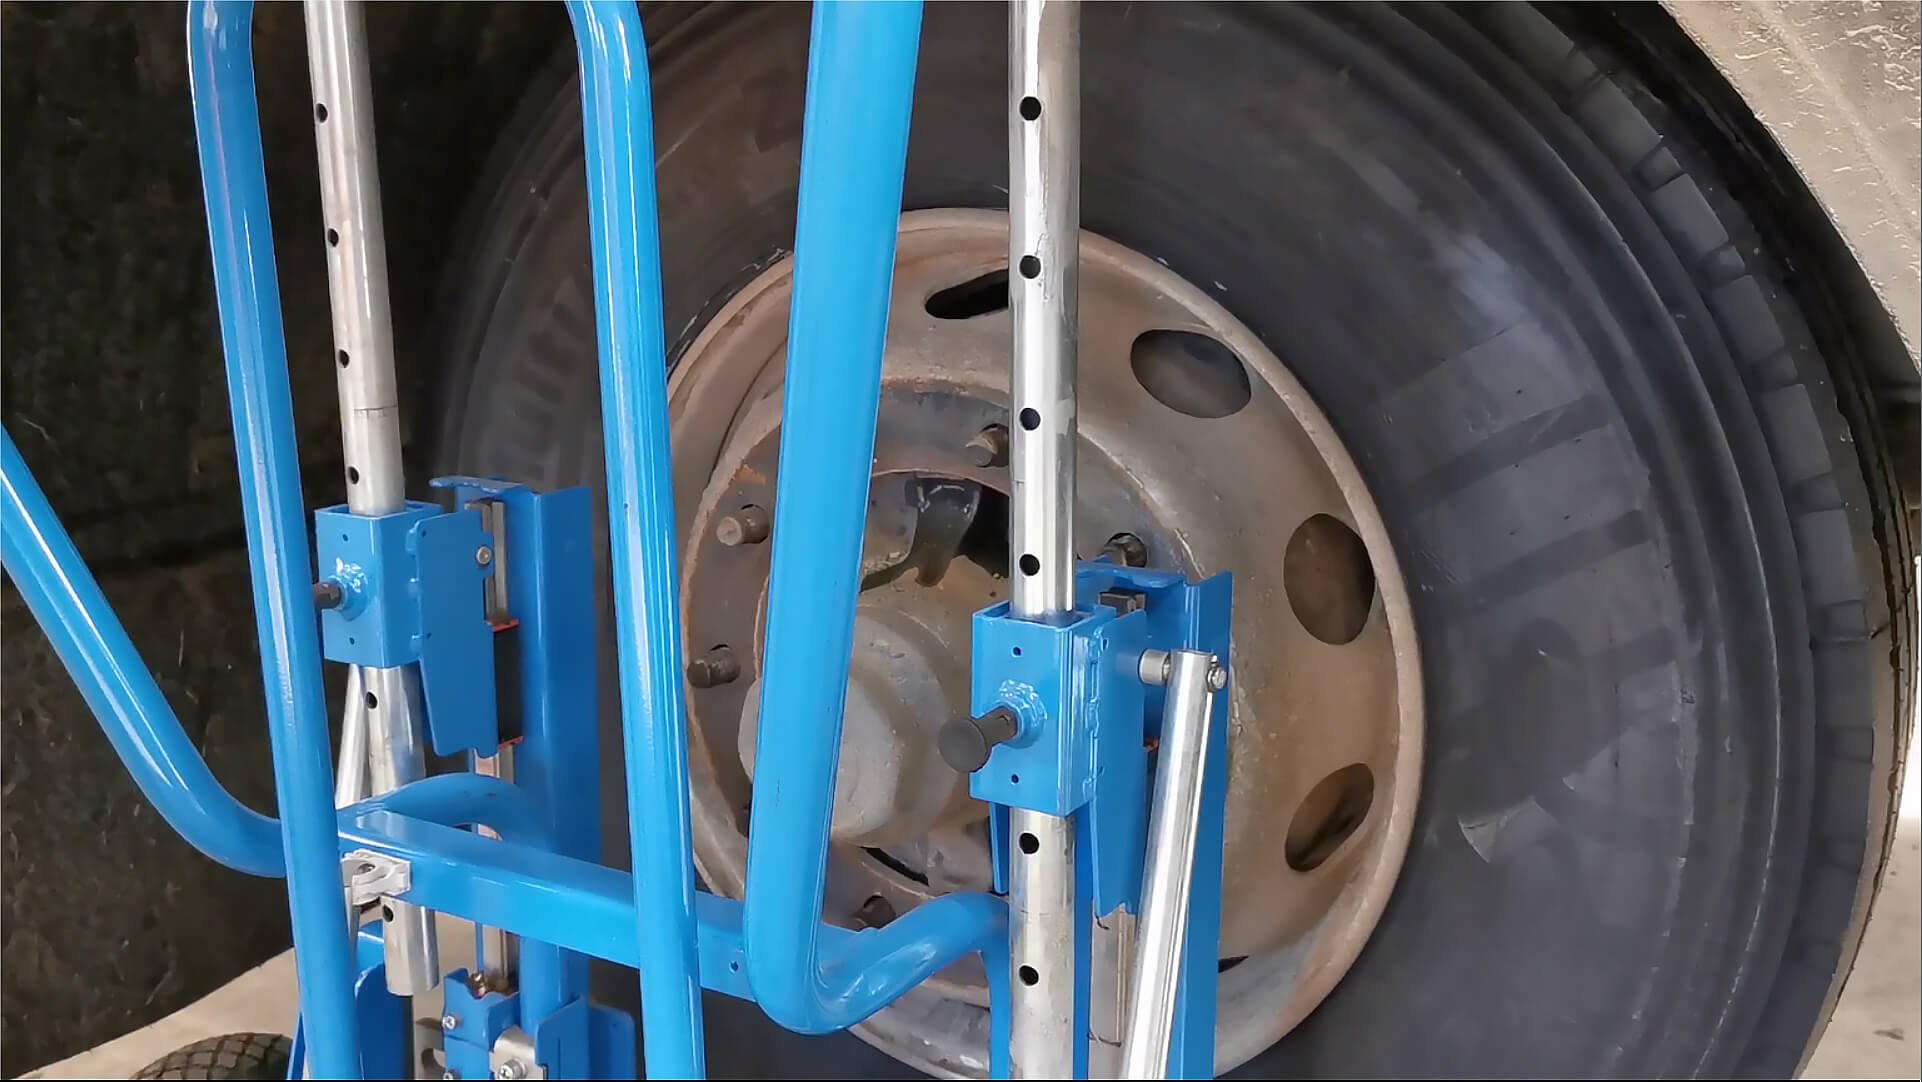 Il est facile de faire tourner la roue à la main pour aligner le moyeu et les boulons grâce aux rouleaux intégrés.